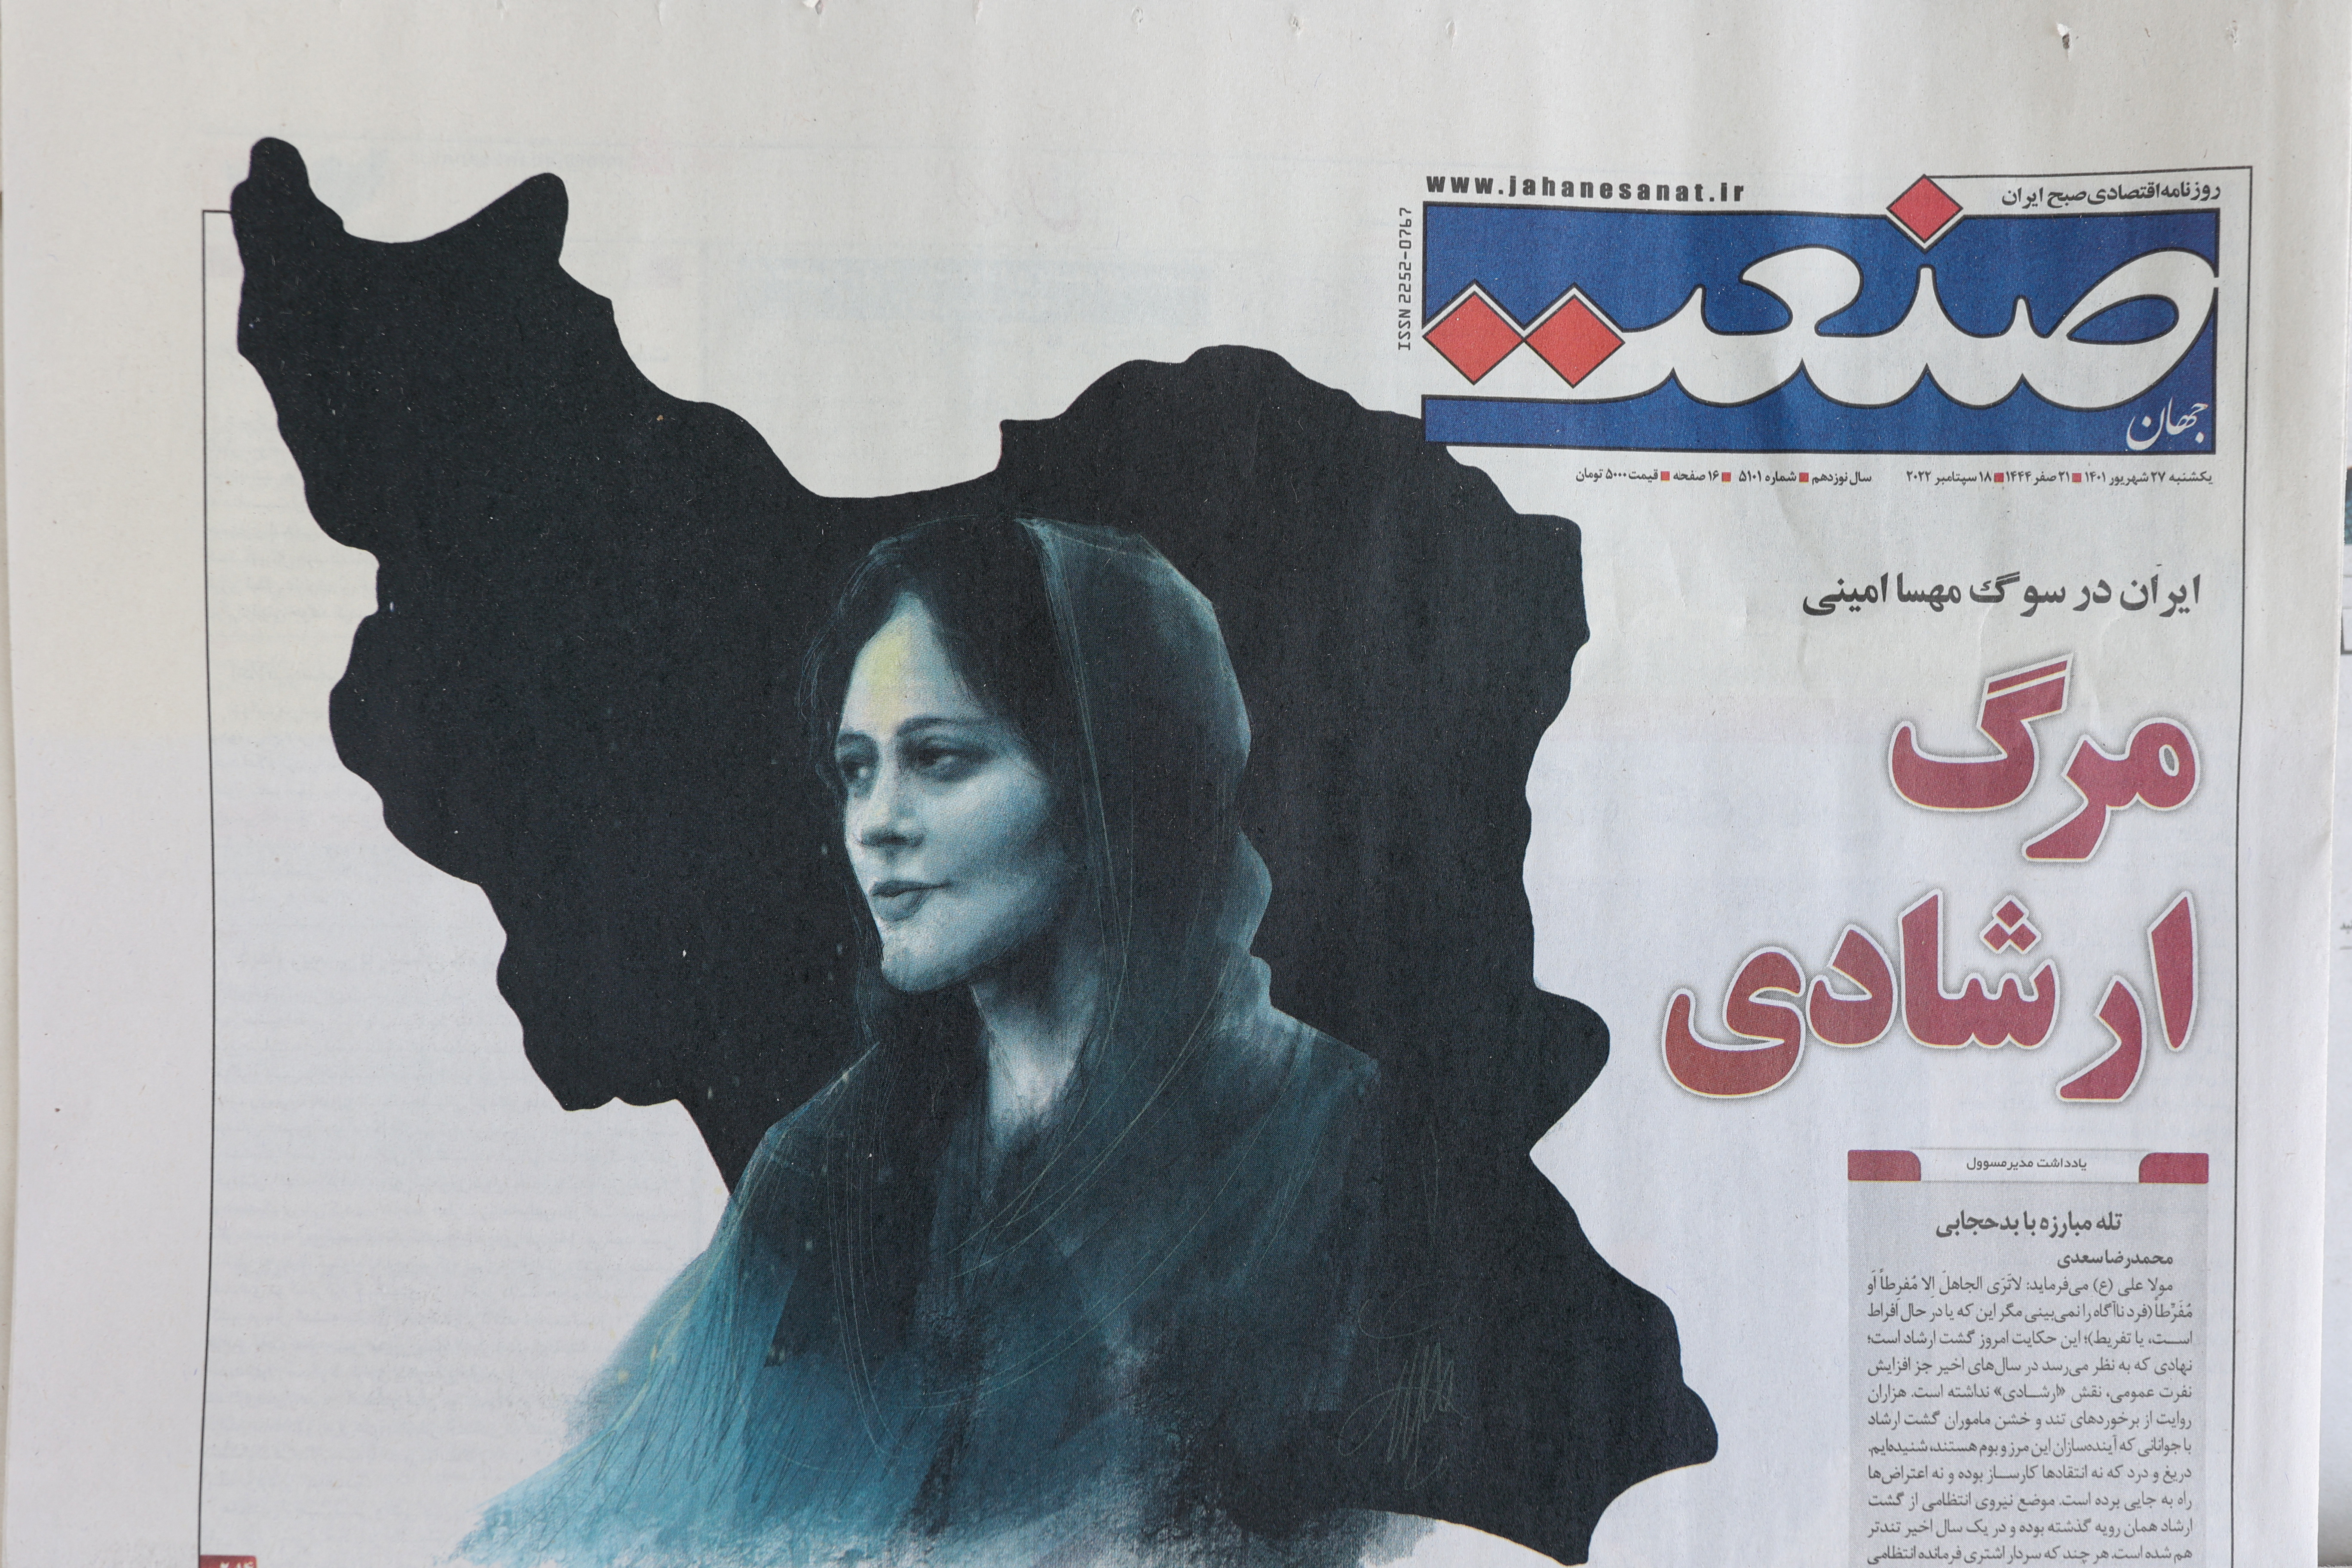 Un journal avec une photo de couverture de Mahsa Amini, à Téhéran, Iran le 18 septembre 2022. Majid Asgaripour/WANA (Agence de presse de l'Asie de l'Ouest) via REUTERS/File